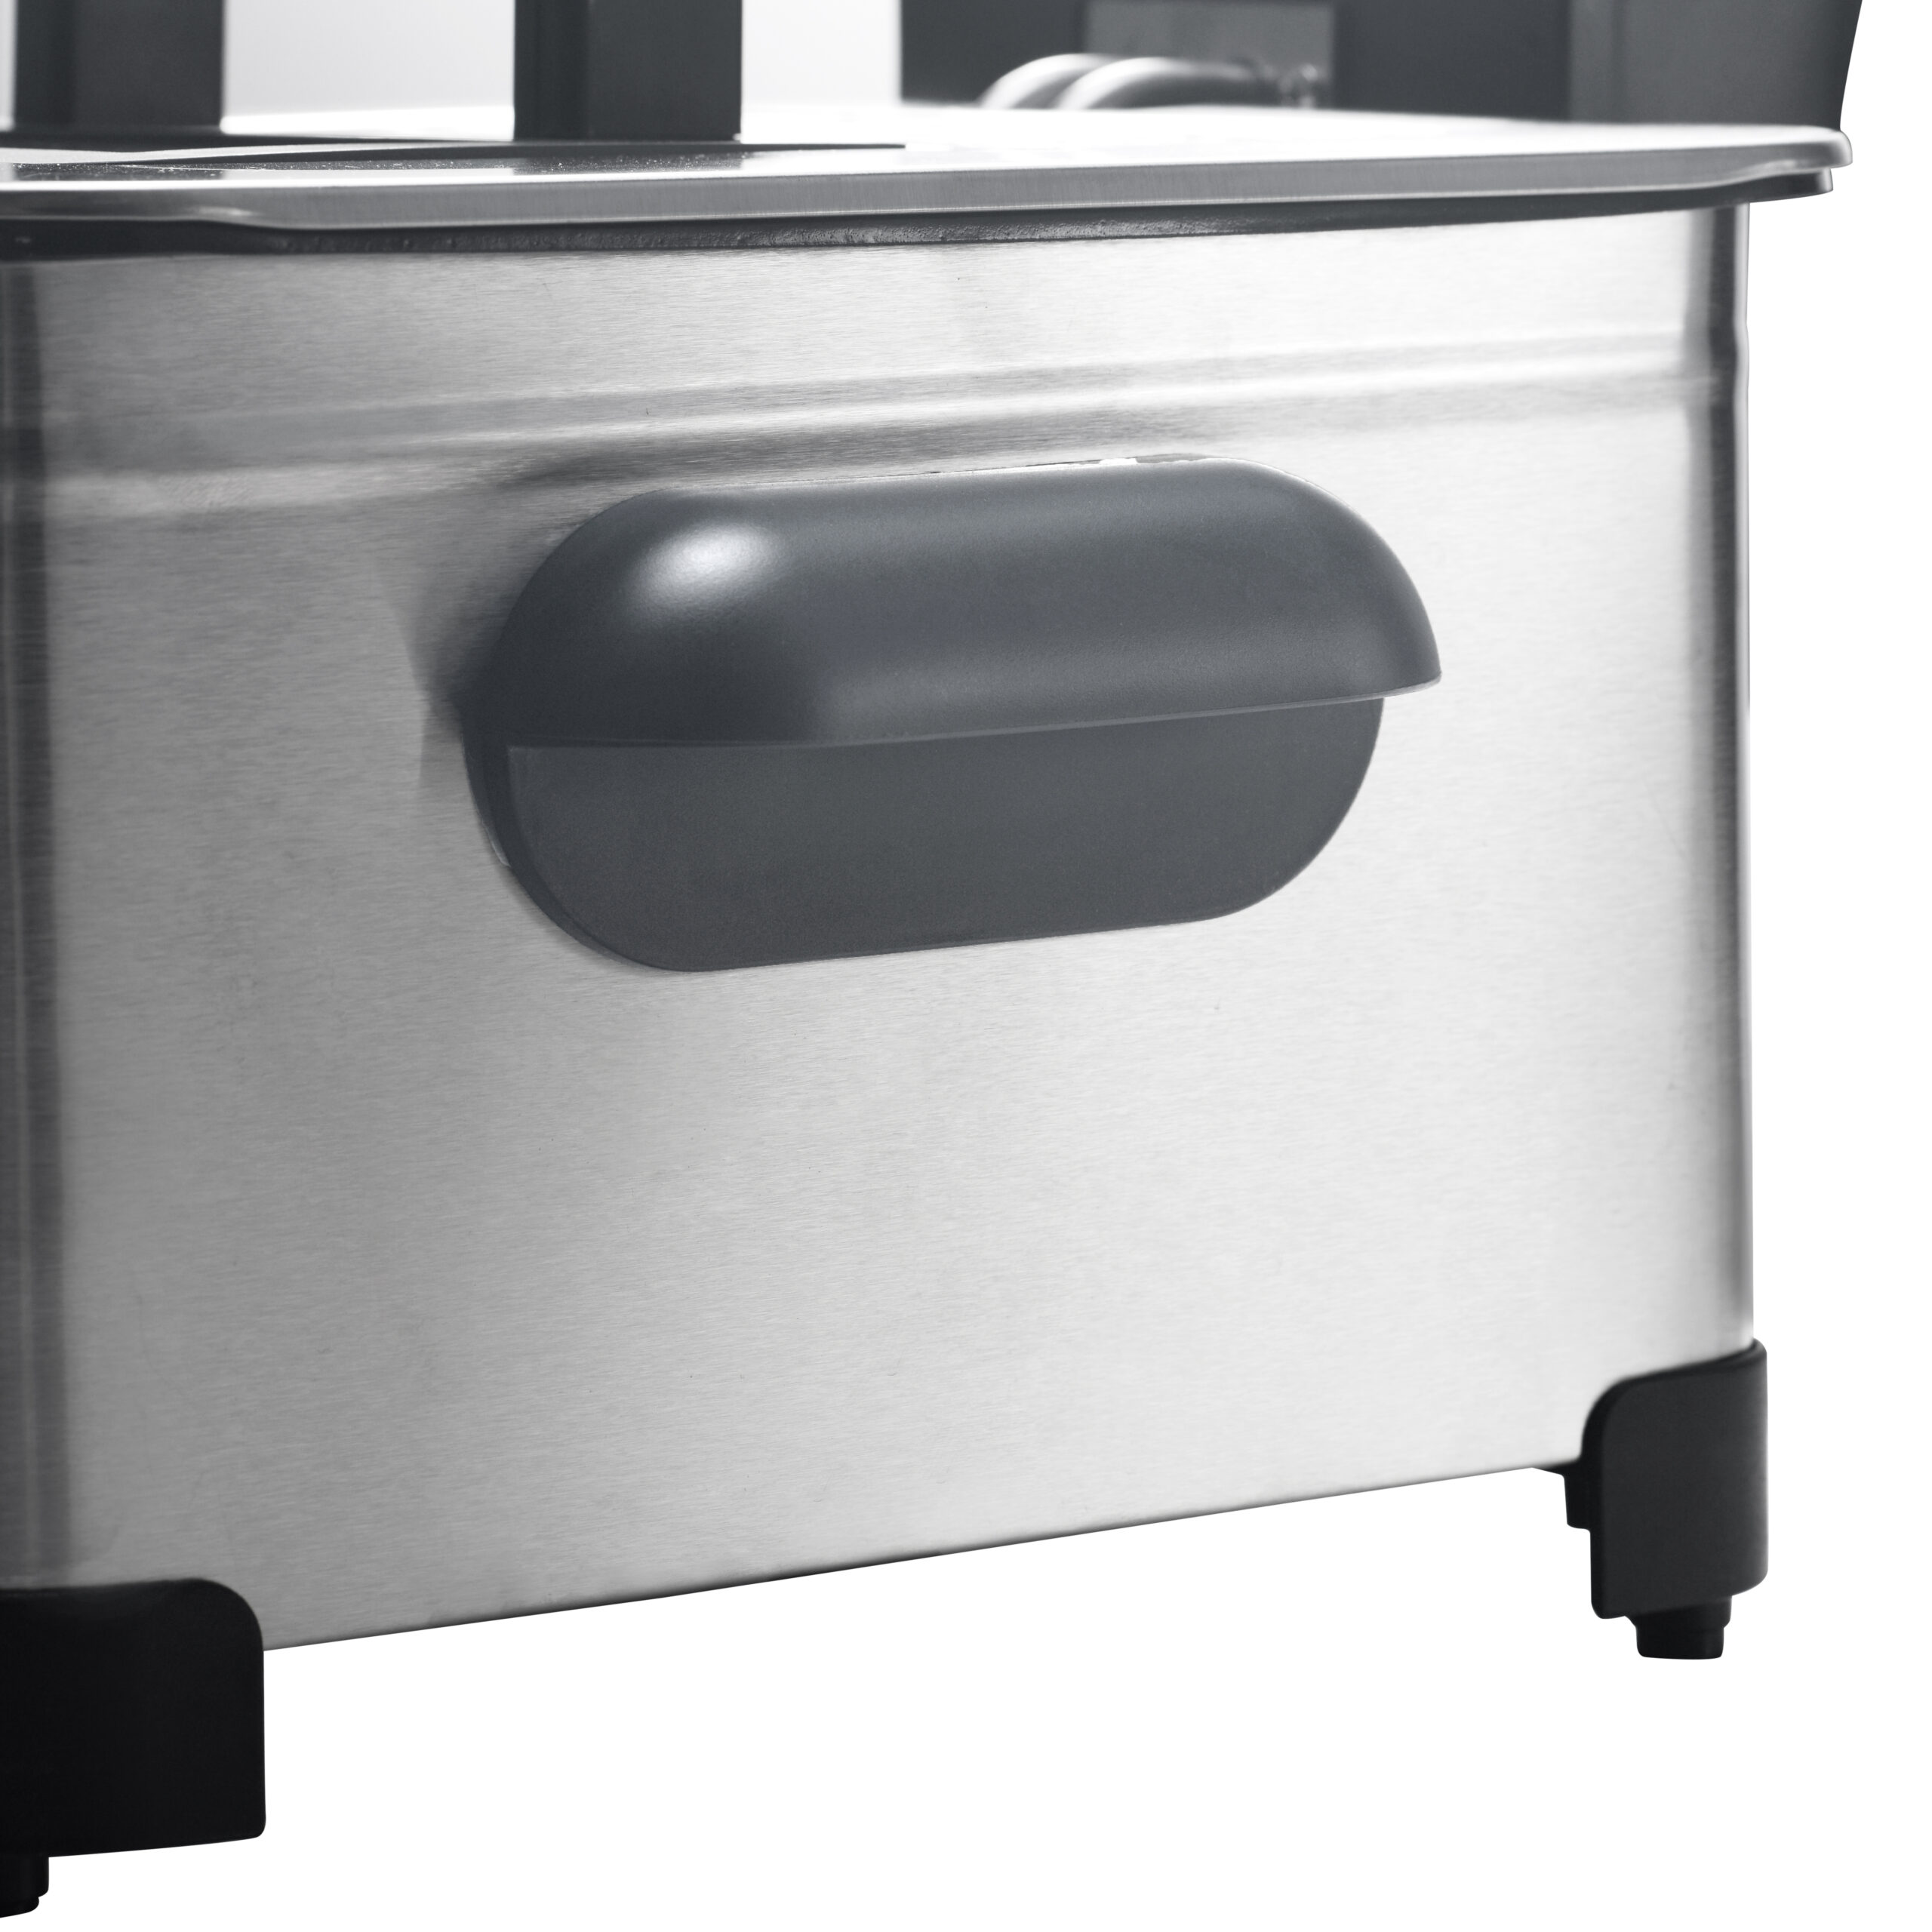 Friteuse électrique cuve amovible inox 5L - Family Fryer au meilleur prix